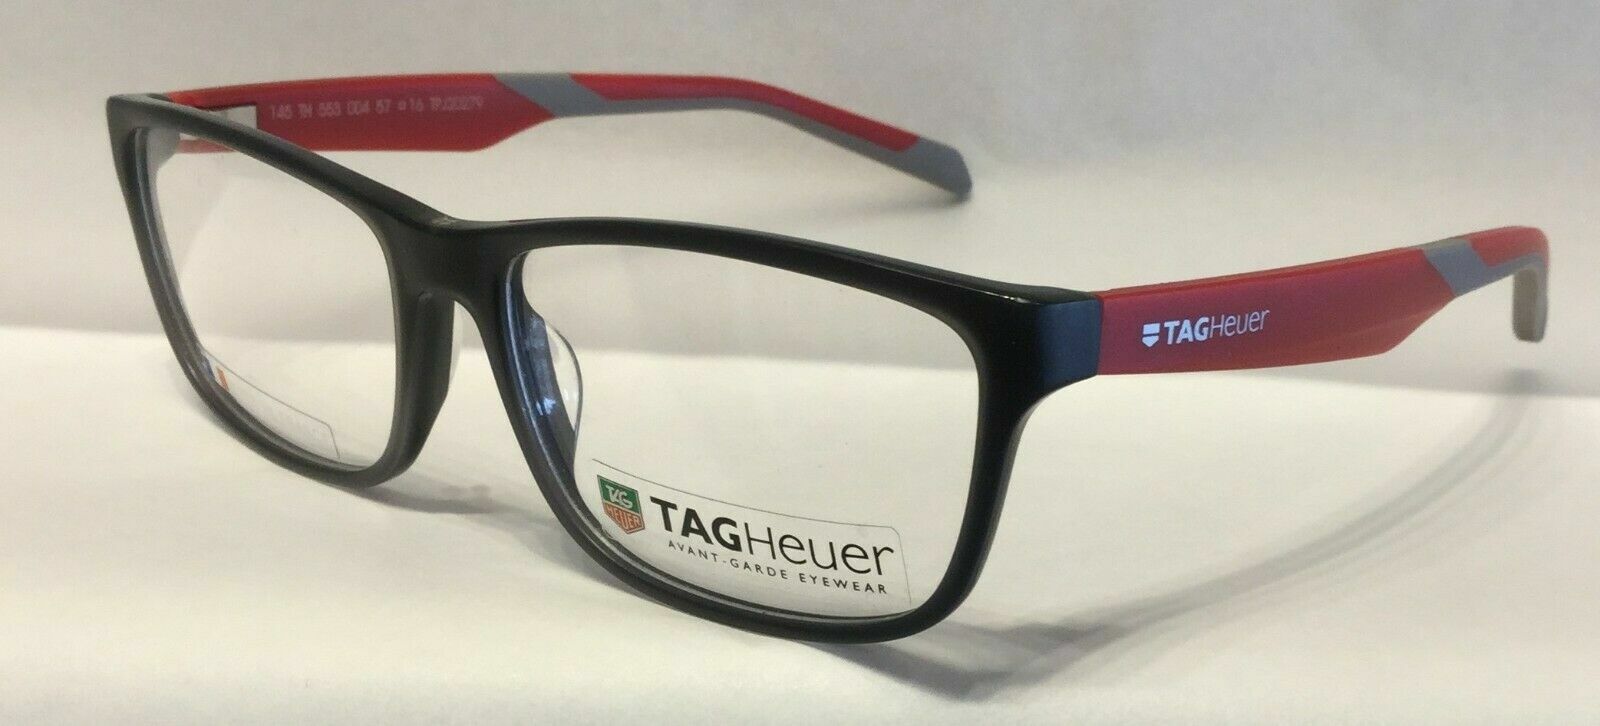 Tag Heuer Reflex TH553 O 004 Black/Red Eyeglasses